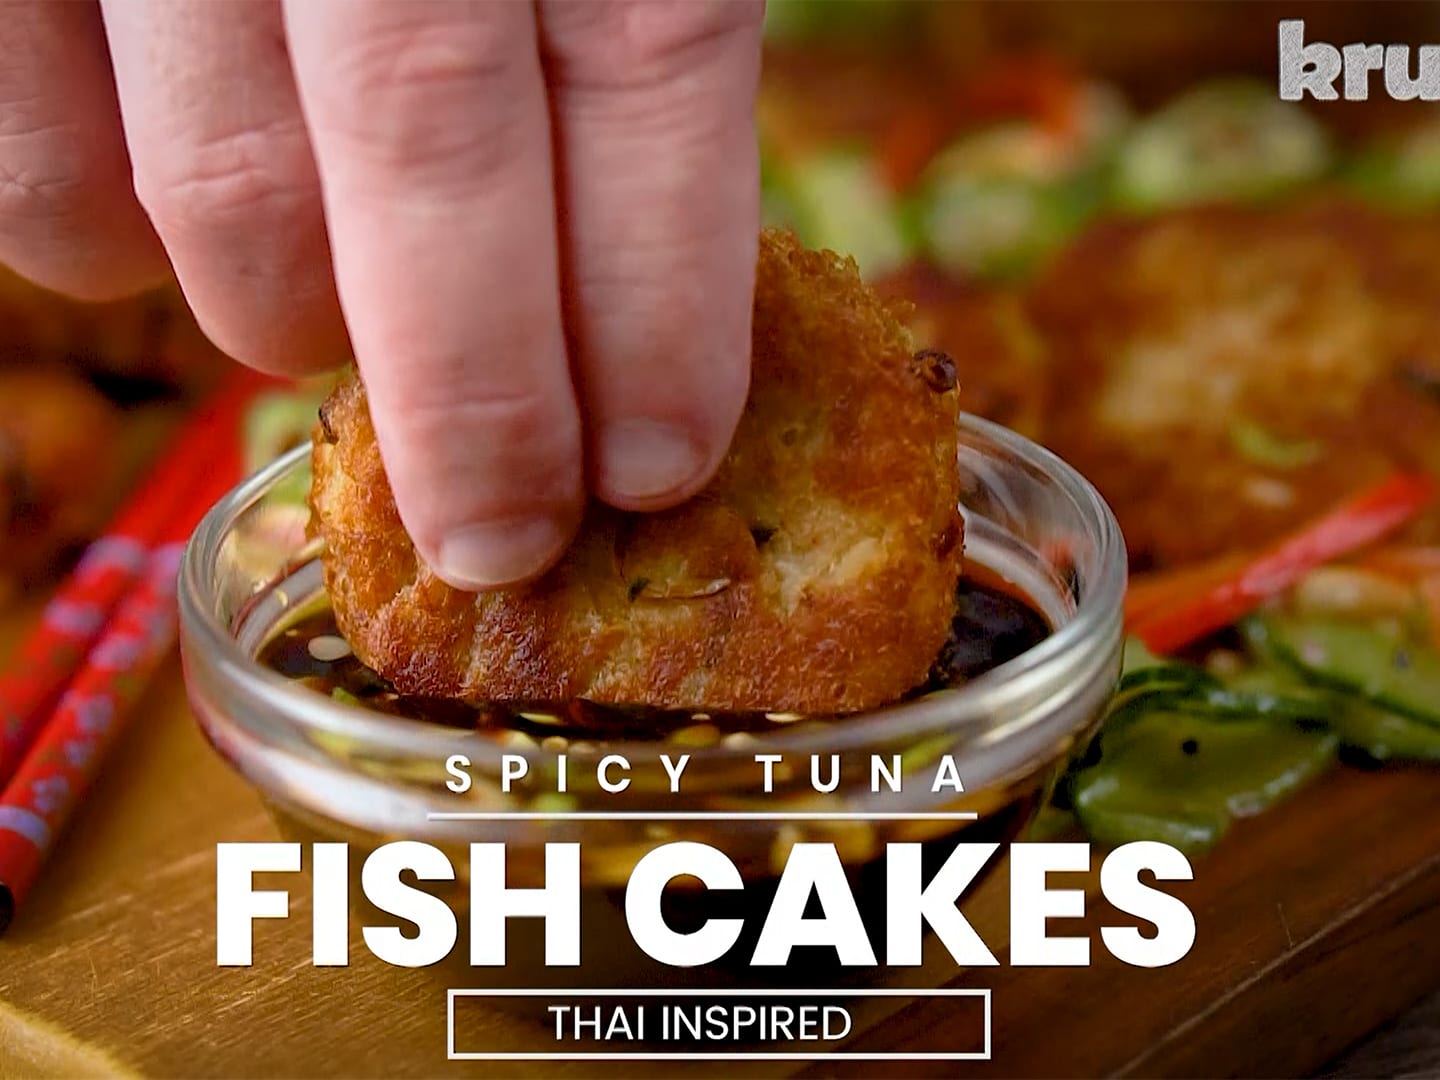 Nisha Katona spiced fishcakes recipe on This Morning – The Talent Zone